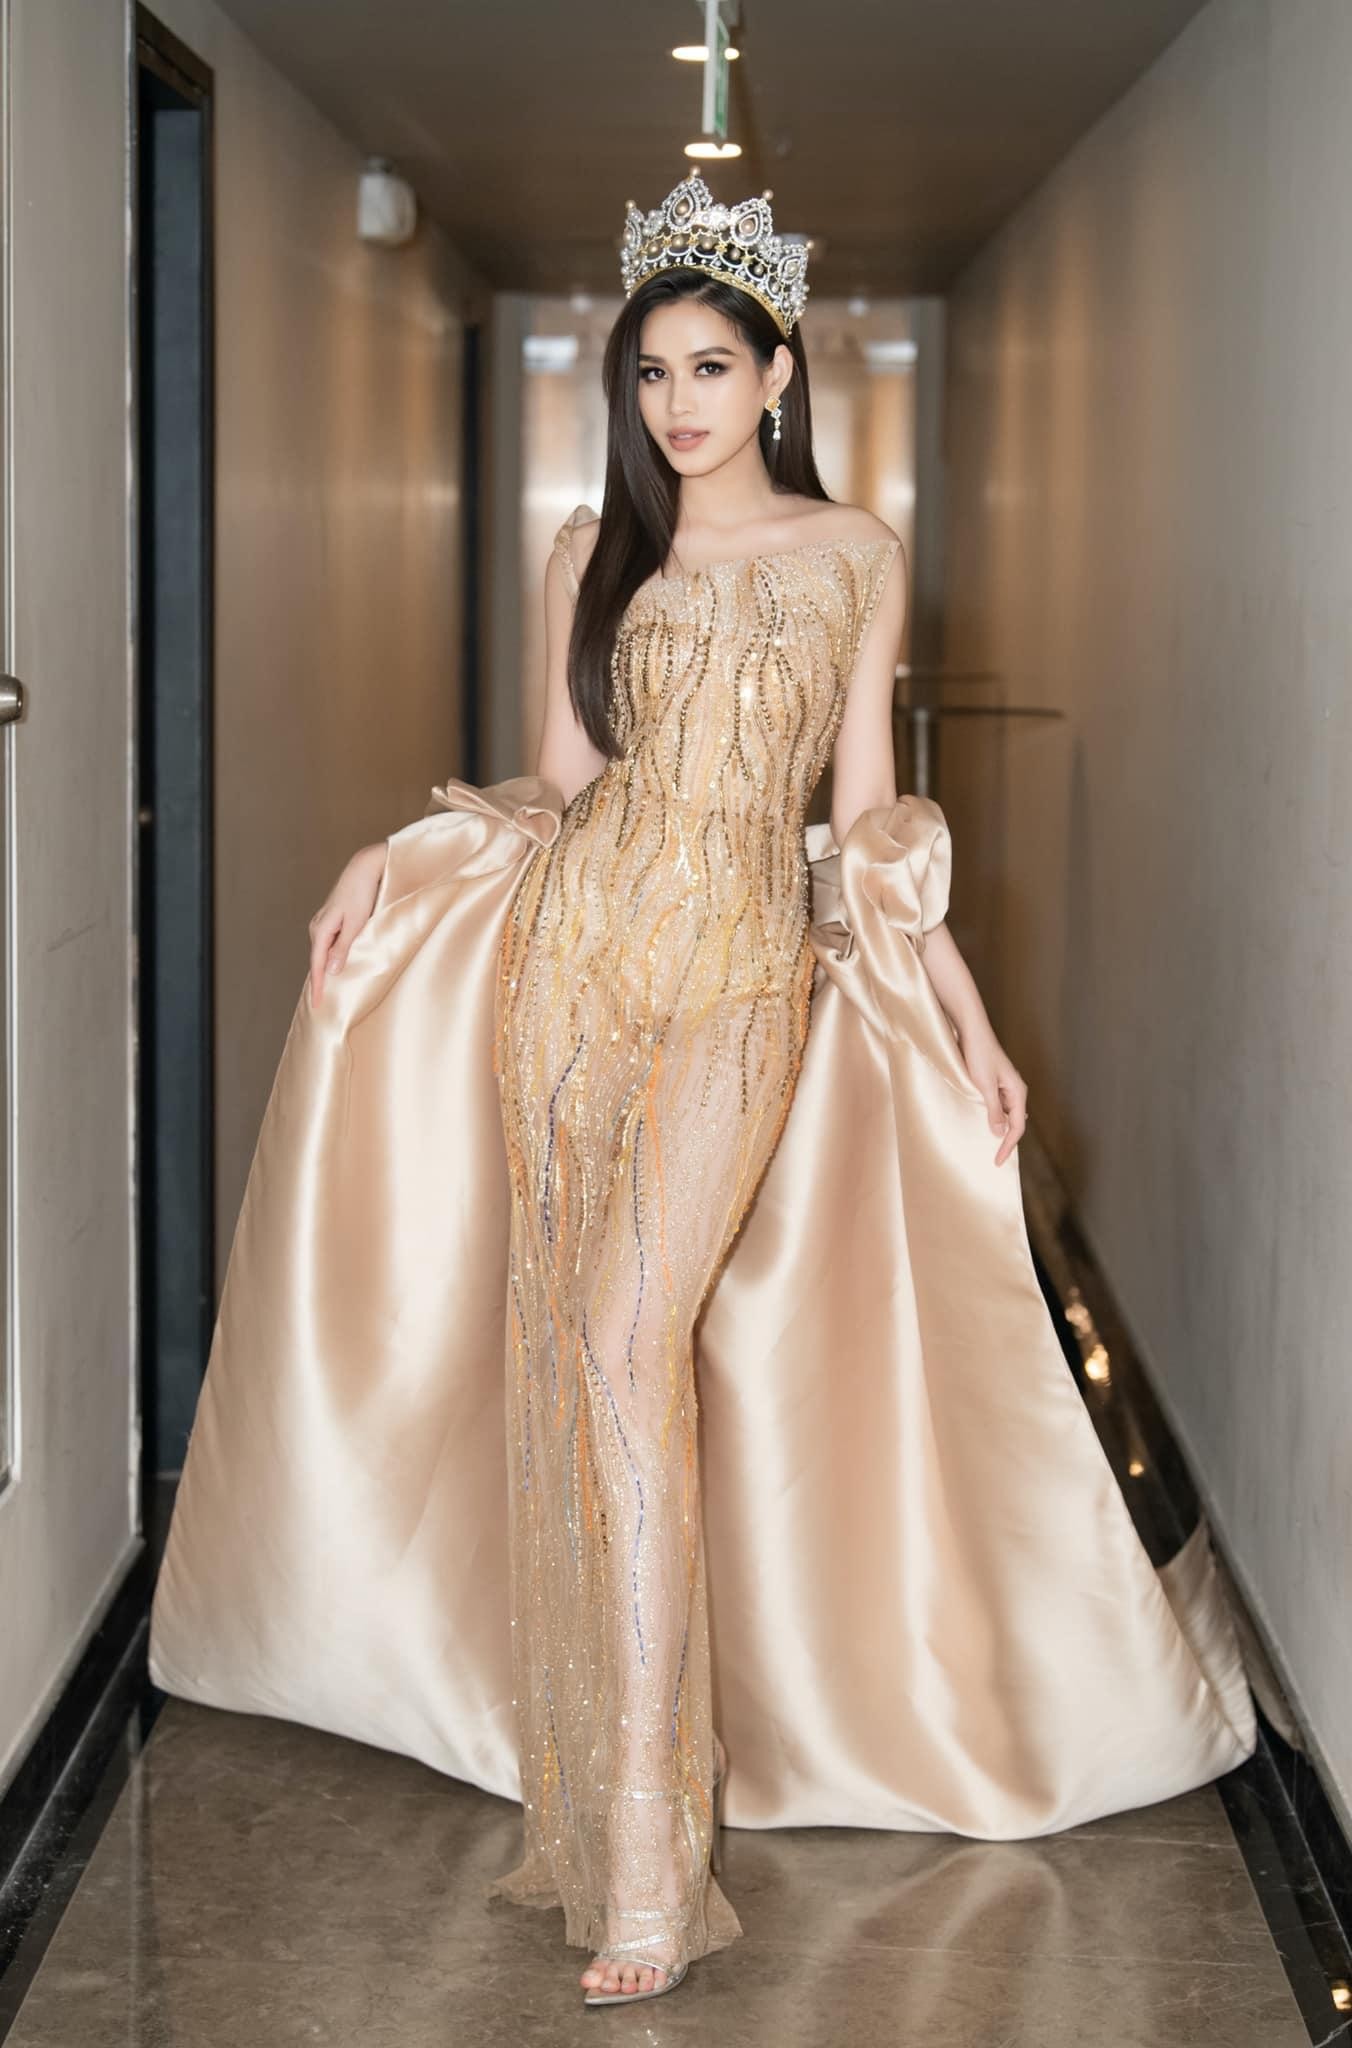 Đỗ Thị Hà diện váy vàng gold đẹp tựa 'nữ thần', Á hậu Phương Anh mặc váy cut-out táo bạo - Ảnh 1.